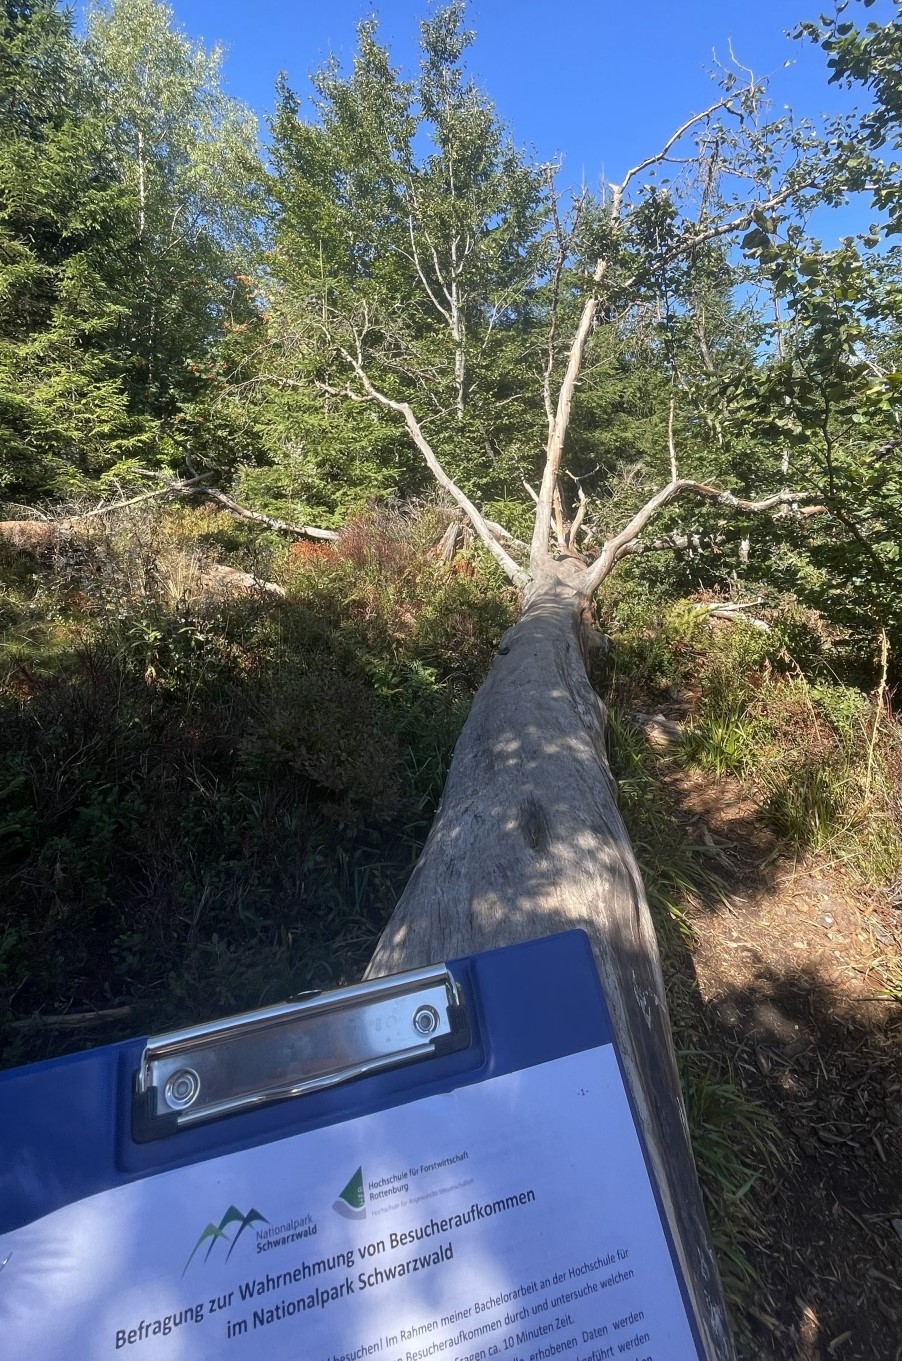 Abb. 1: Bild vom Erhebungstag im Gebiet, man sieht einen langen liegenden Baumstamm und im Vordergrund ein Klemmbrett mit einem Fragebogen. Foto: Franziska Graef 